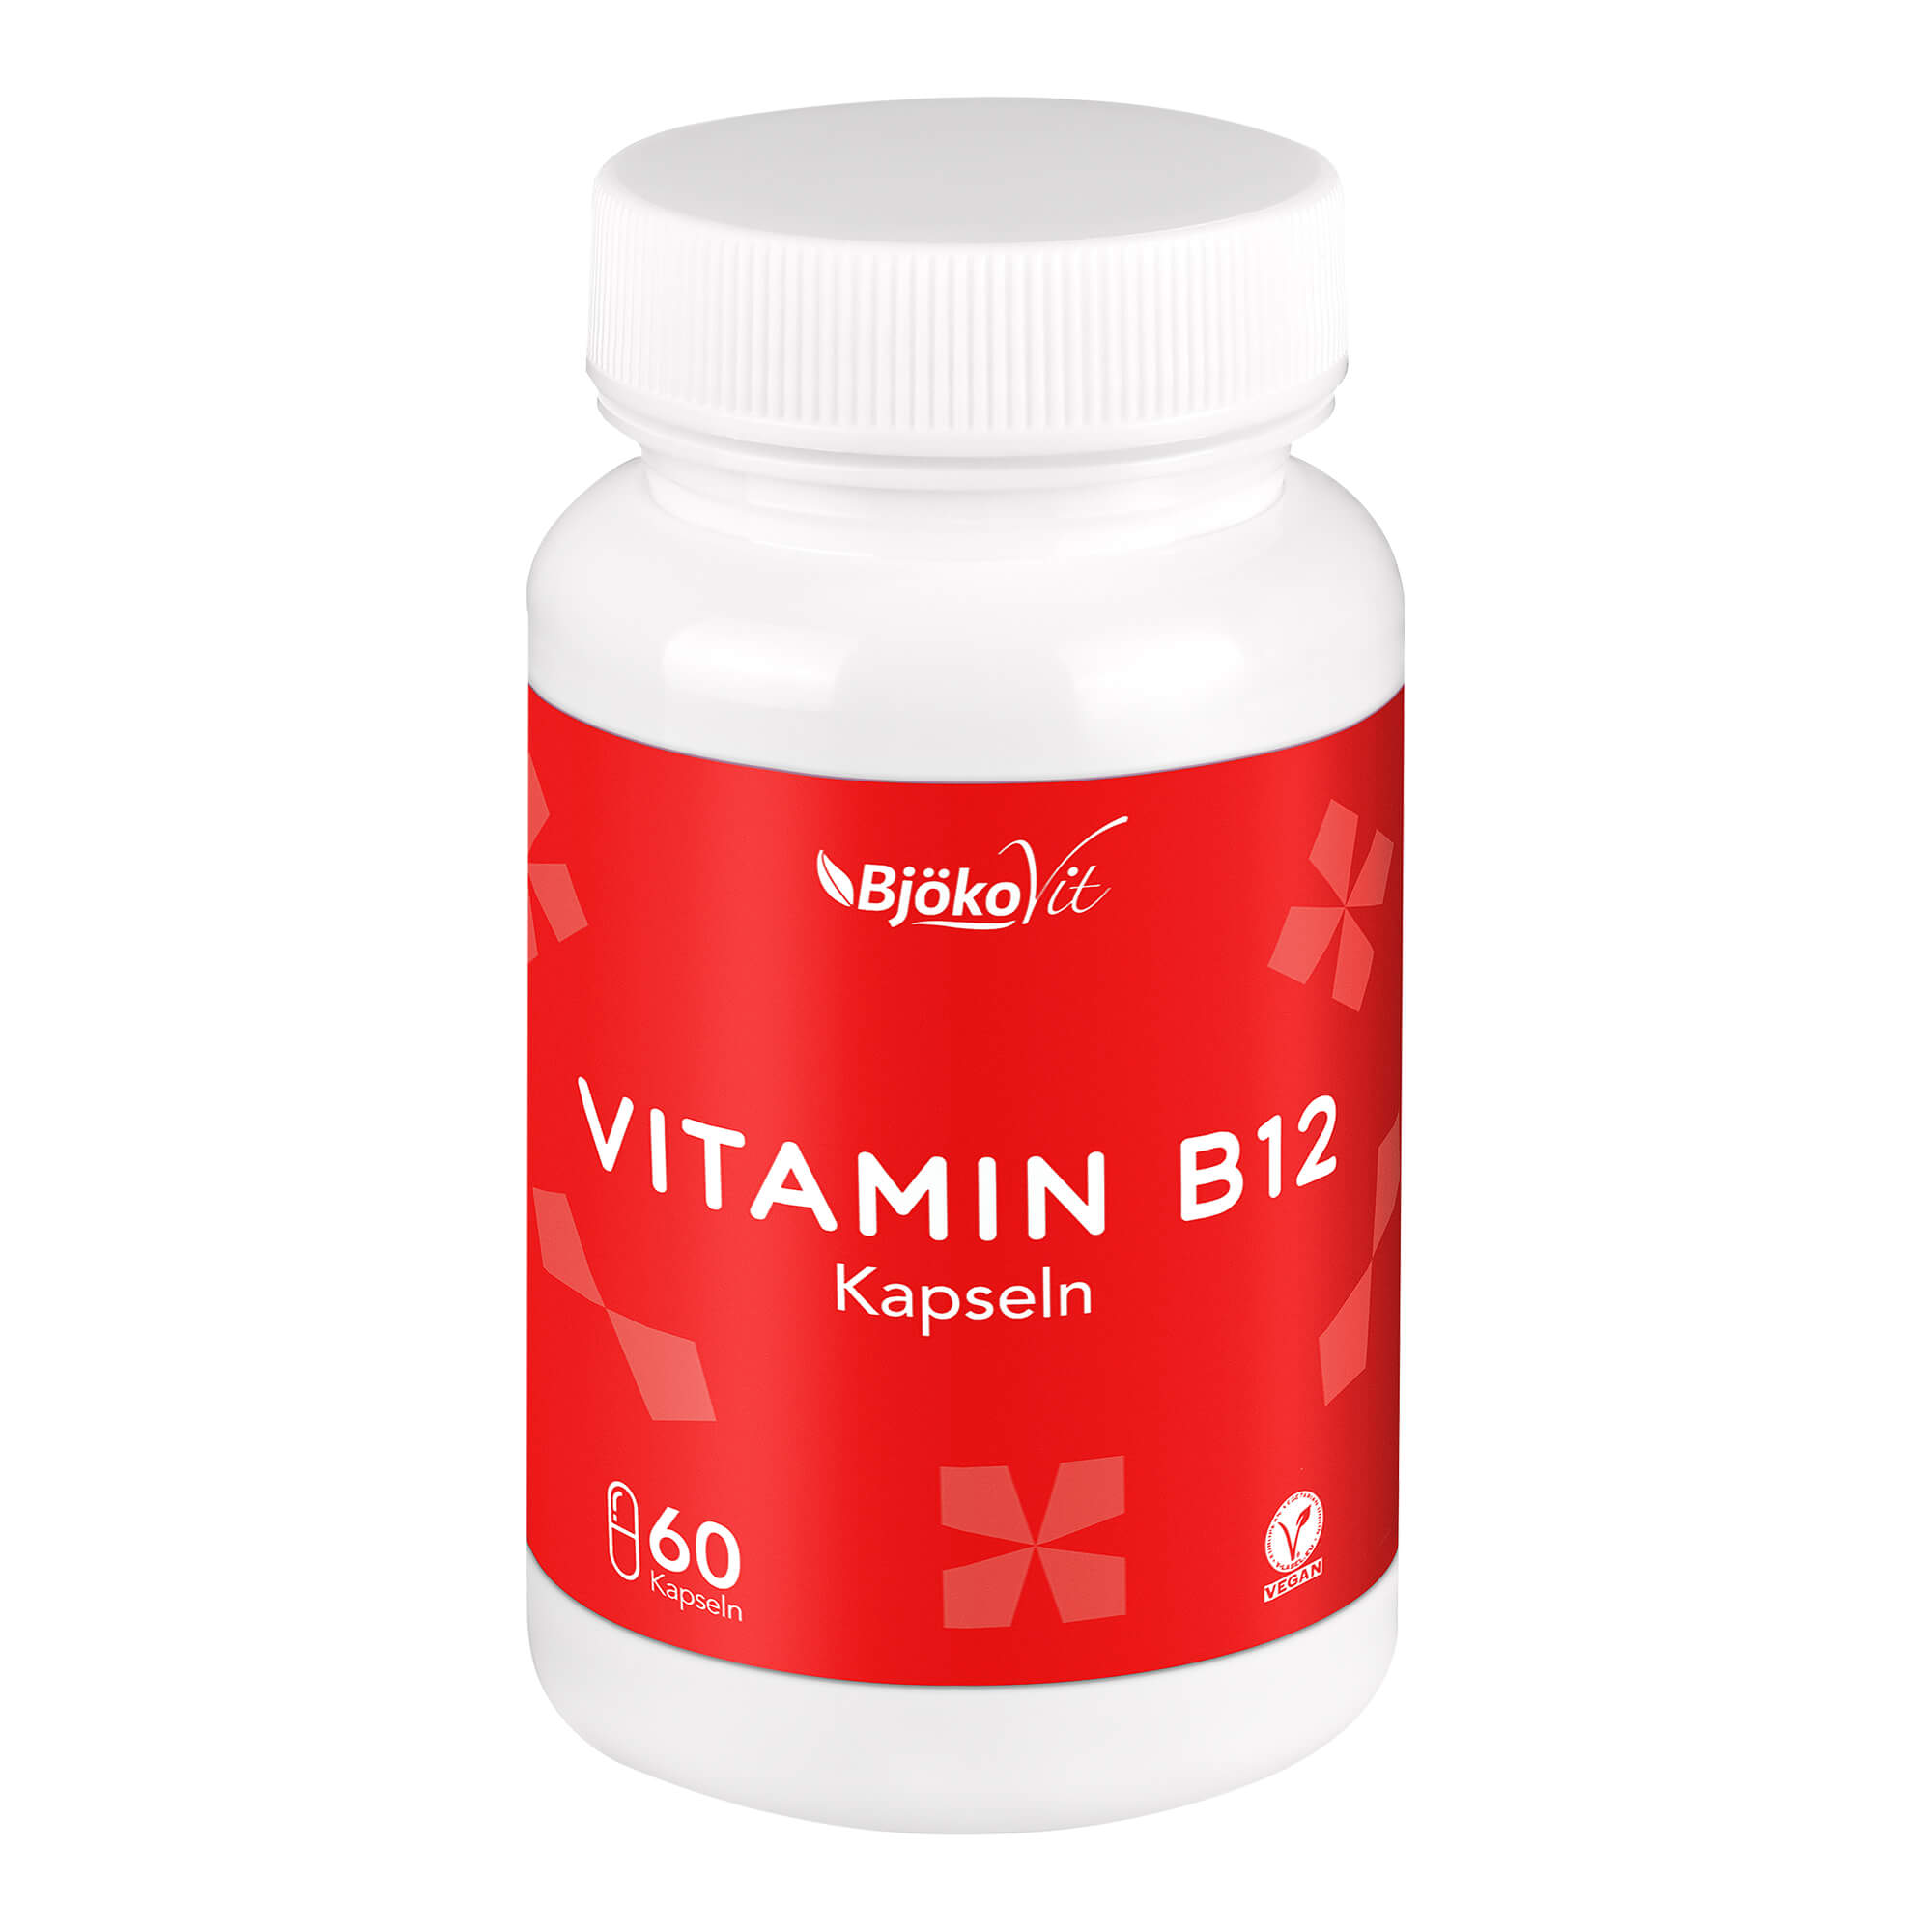 Nahrungsergänzungsmittel mit Vitamin B12 (Vegan).